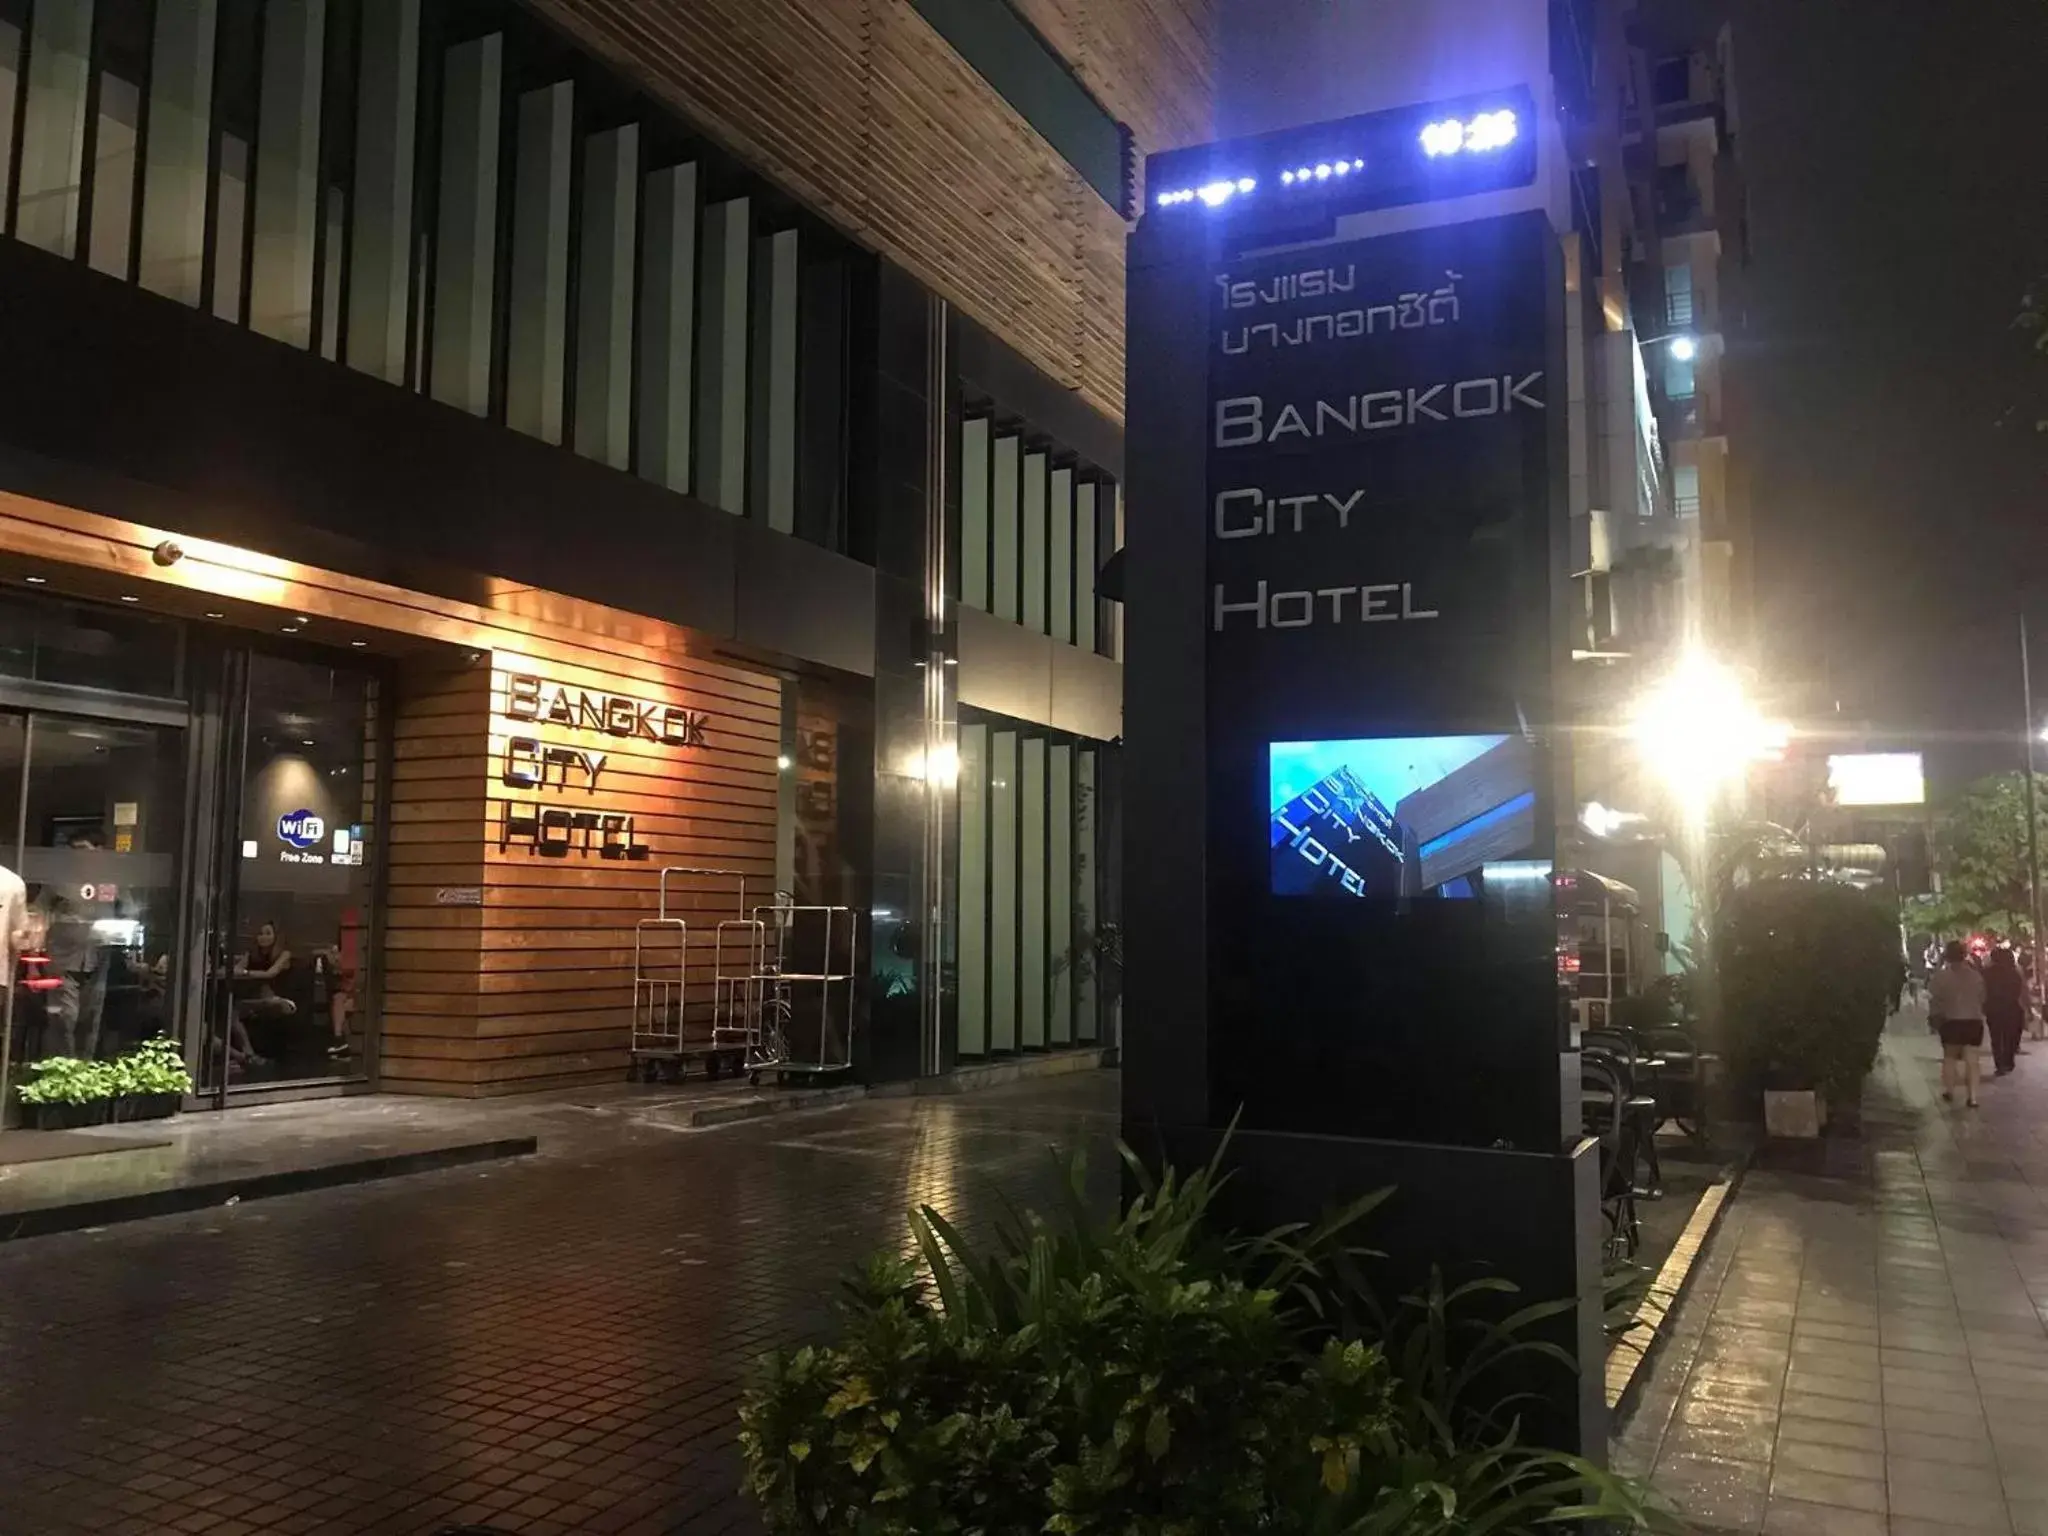 Facade/entrance in Bangkok City Hotel